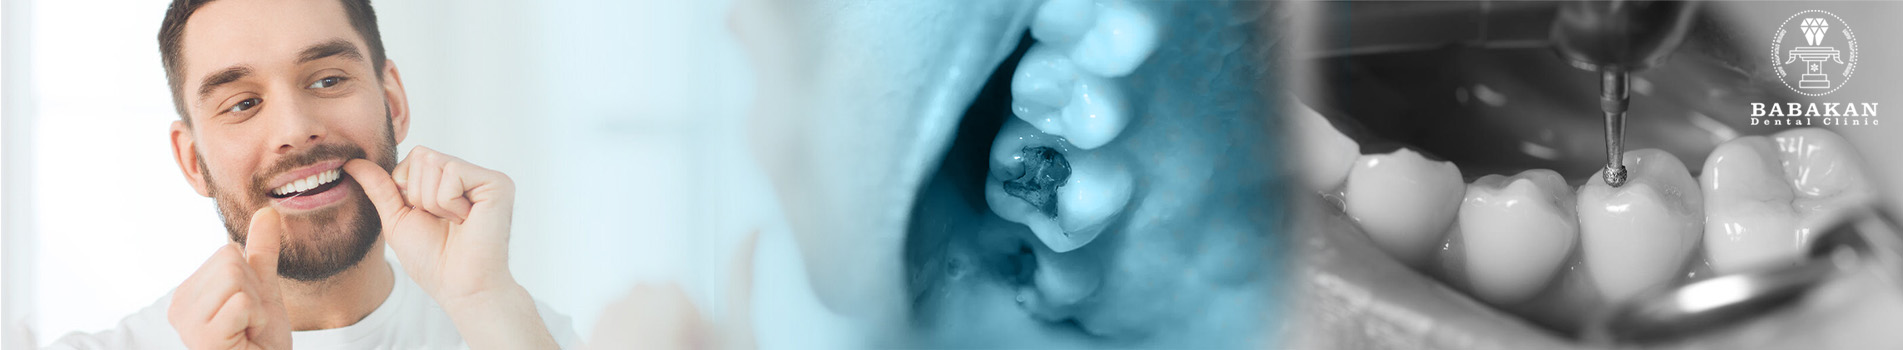 مراقبت از دندان بعد از ترمیم و پر کردن